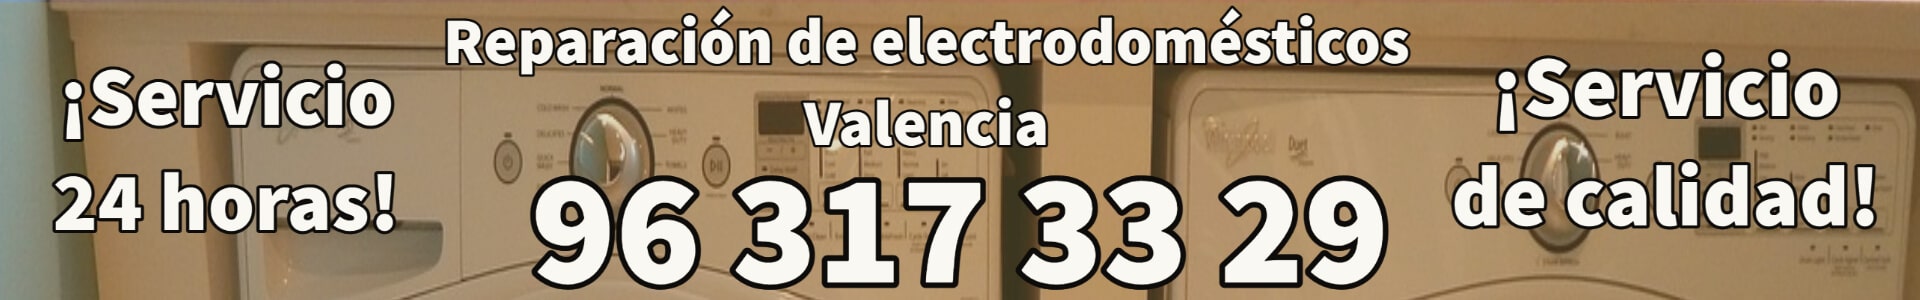 Reparación Electrodomésticos Valencia ️【96 317 33 29】 2828